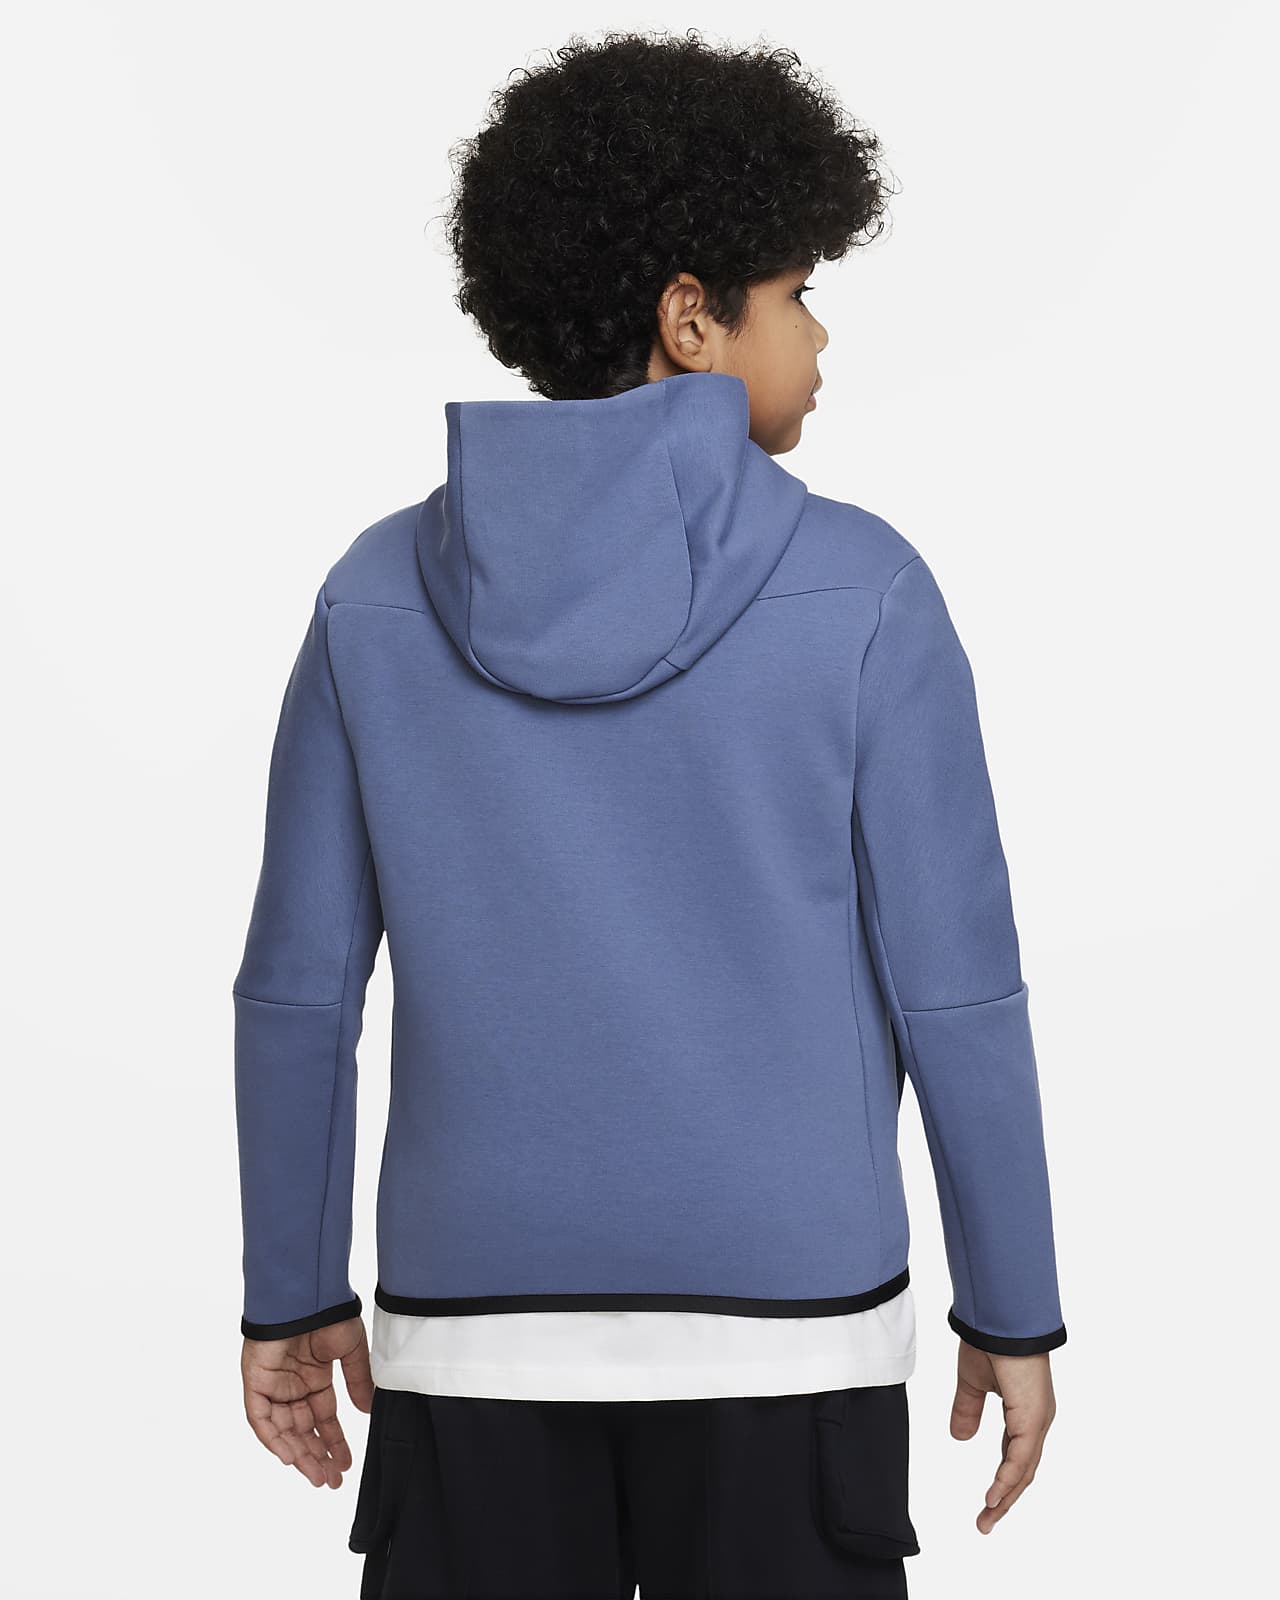 Nike Sportswear Tech Fleece Older Kids' (Boys') Full-Zip Hoodie (Extended Size).